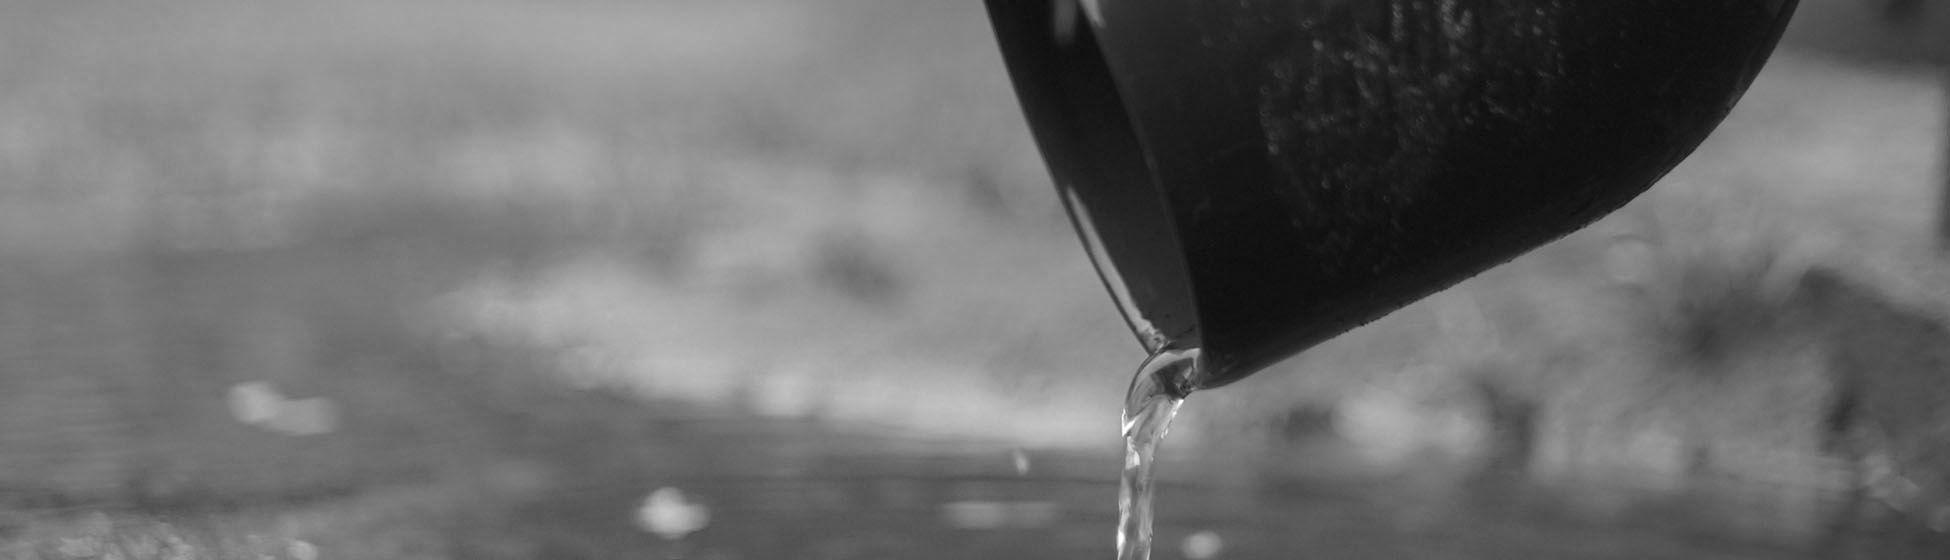 Installer pompe recuperation eau de pluie